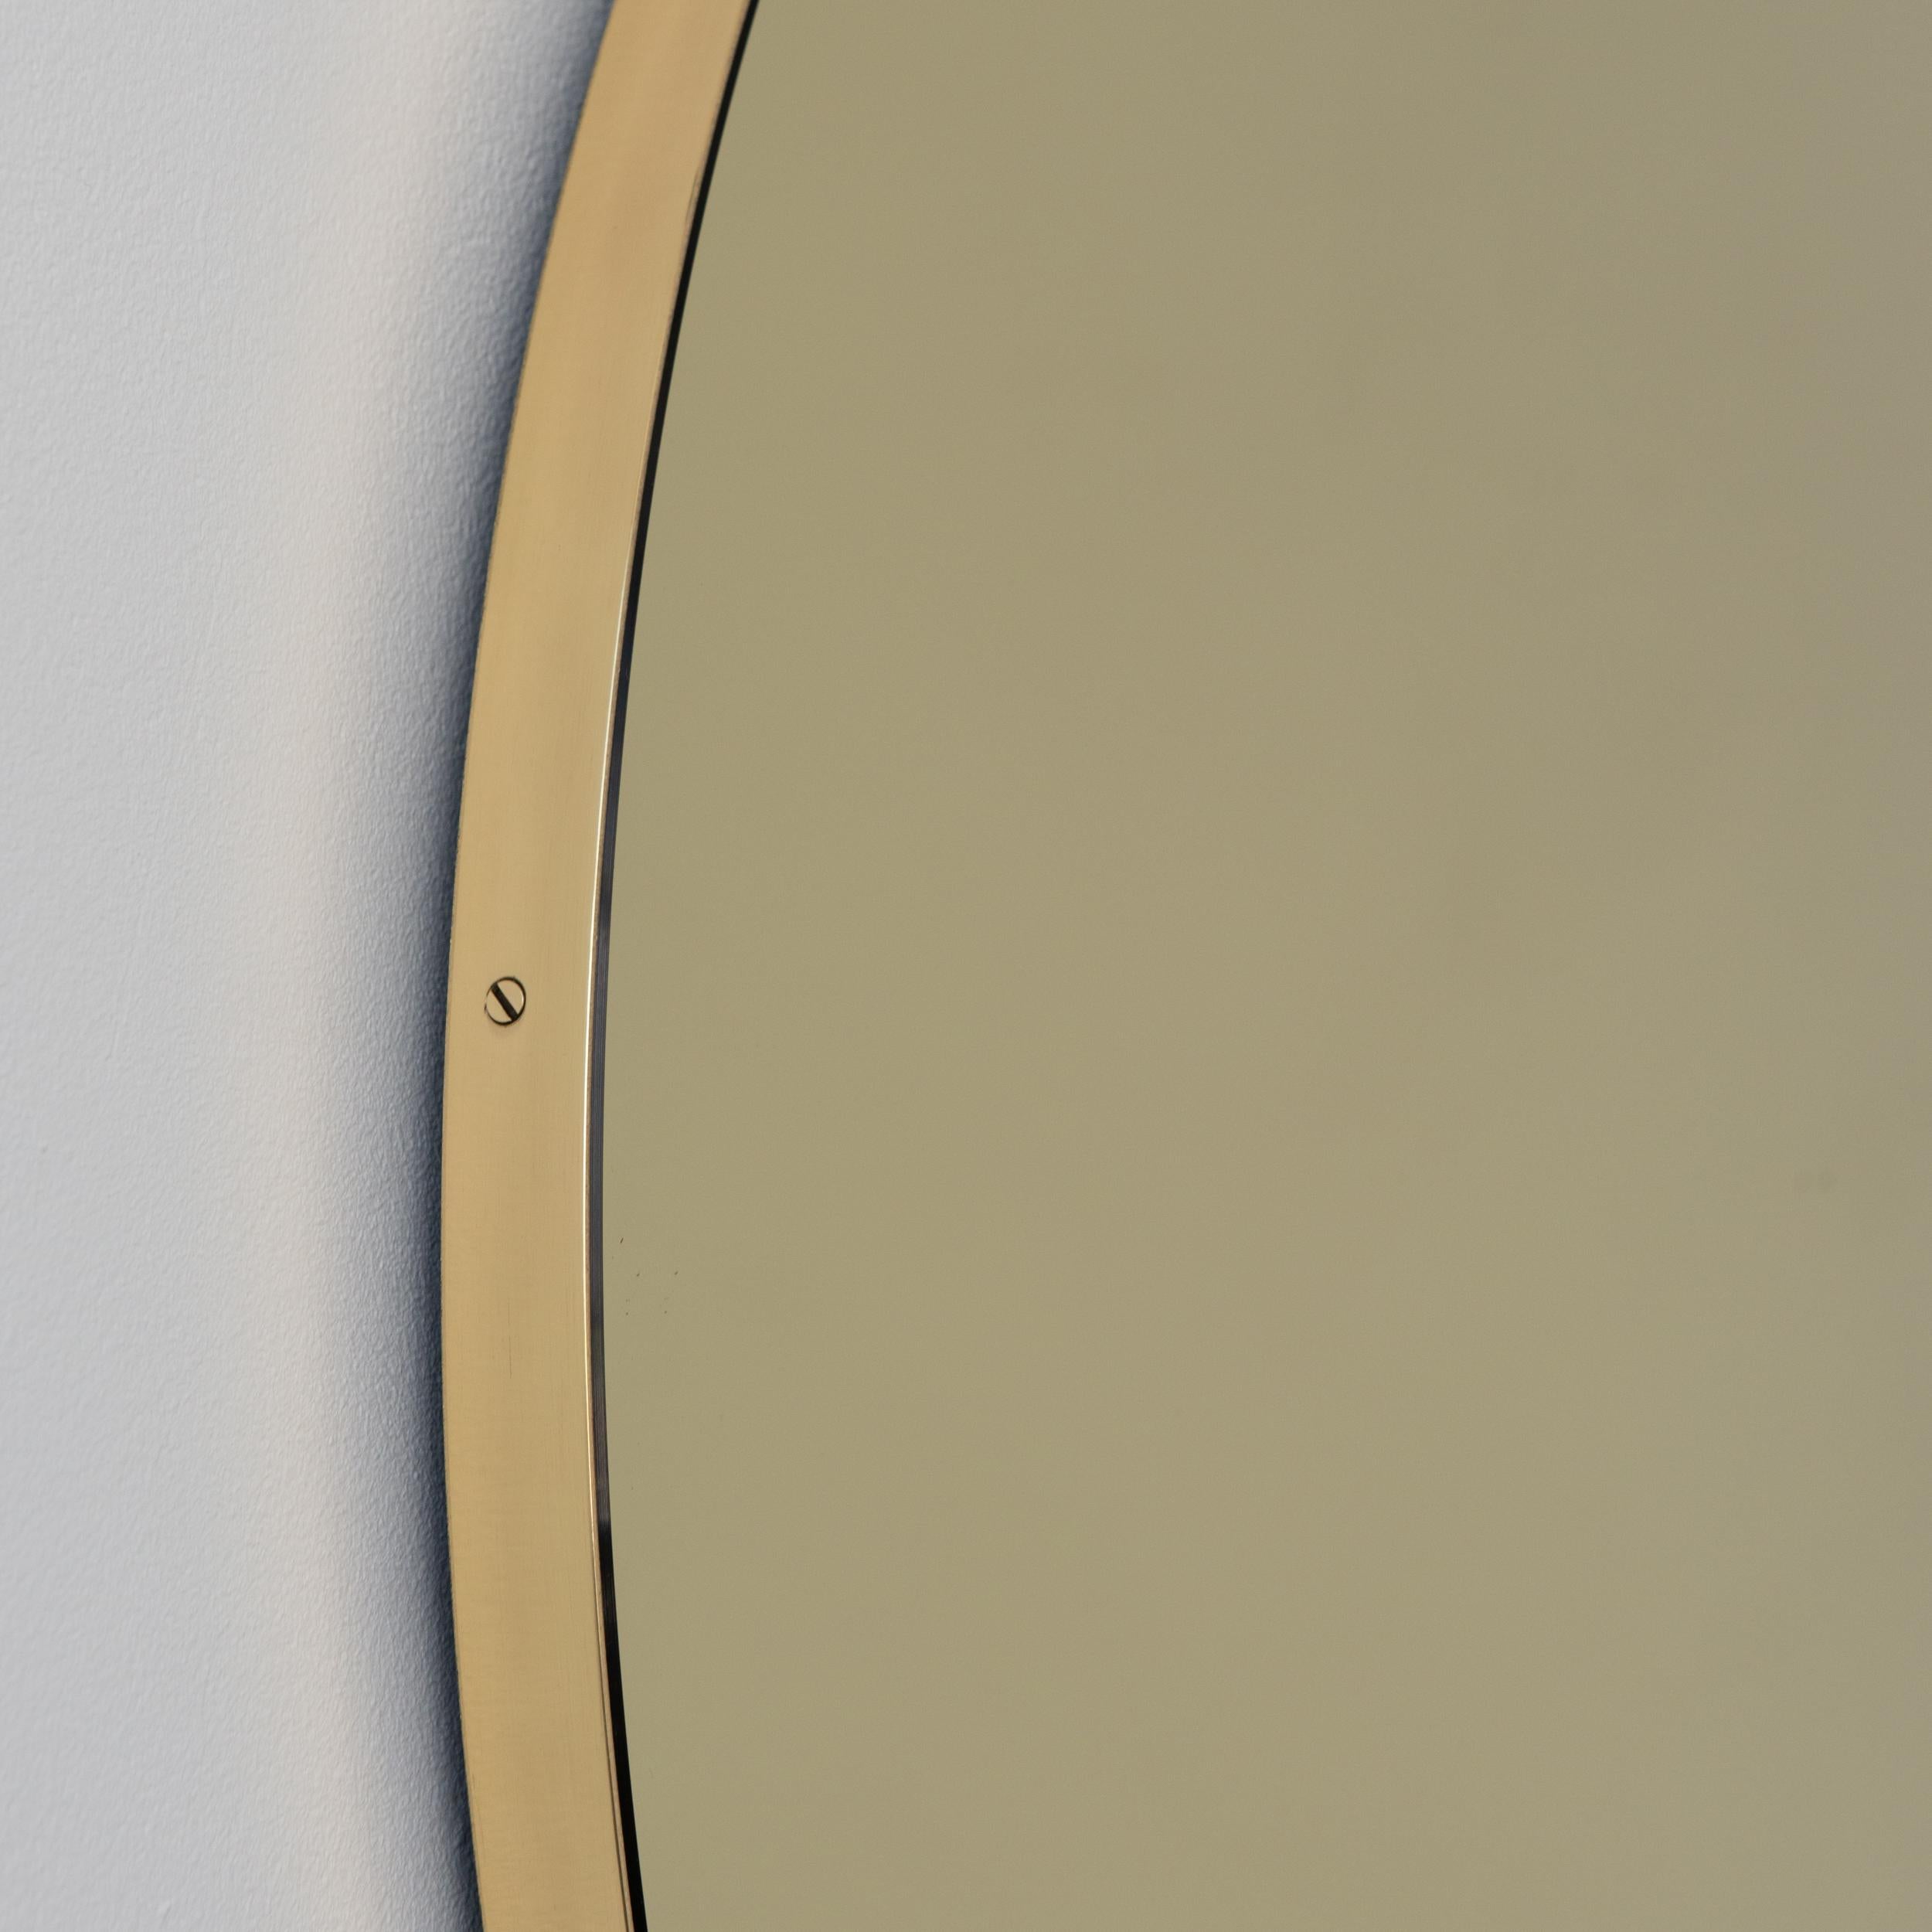 Zeitgenössischer, goldfarbener Orbis™-Rundspiegel mit minimalistischem Rahmen aus gebürstetem Messing. Die Details und die Verarbeitung, einschließlich der sichtbaren Messingschrauben, unterstreichen die handwerkliche Qualität des Spiegels, ein